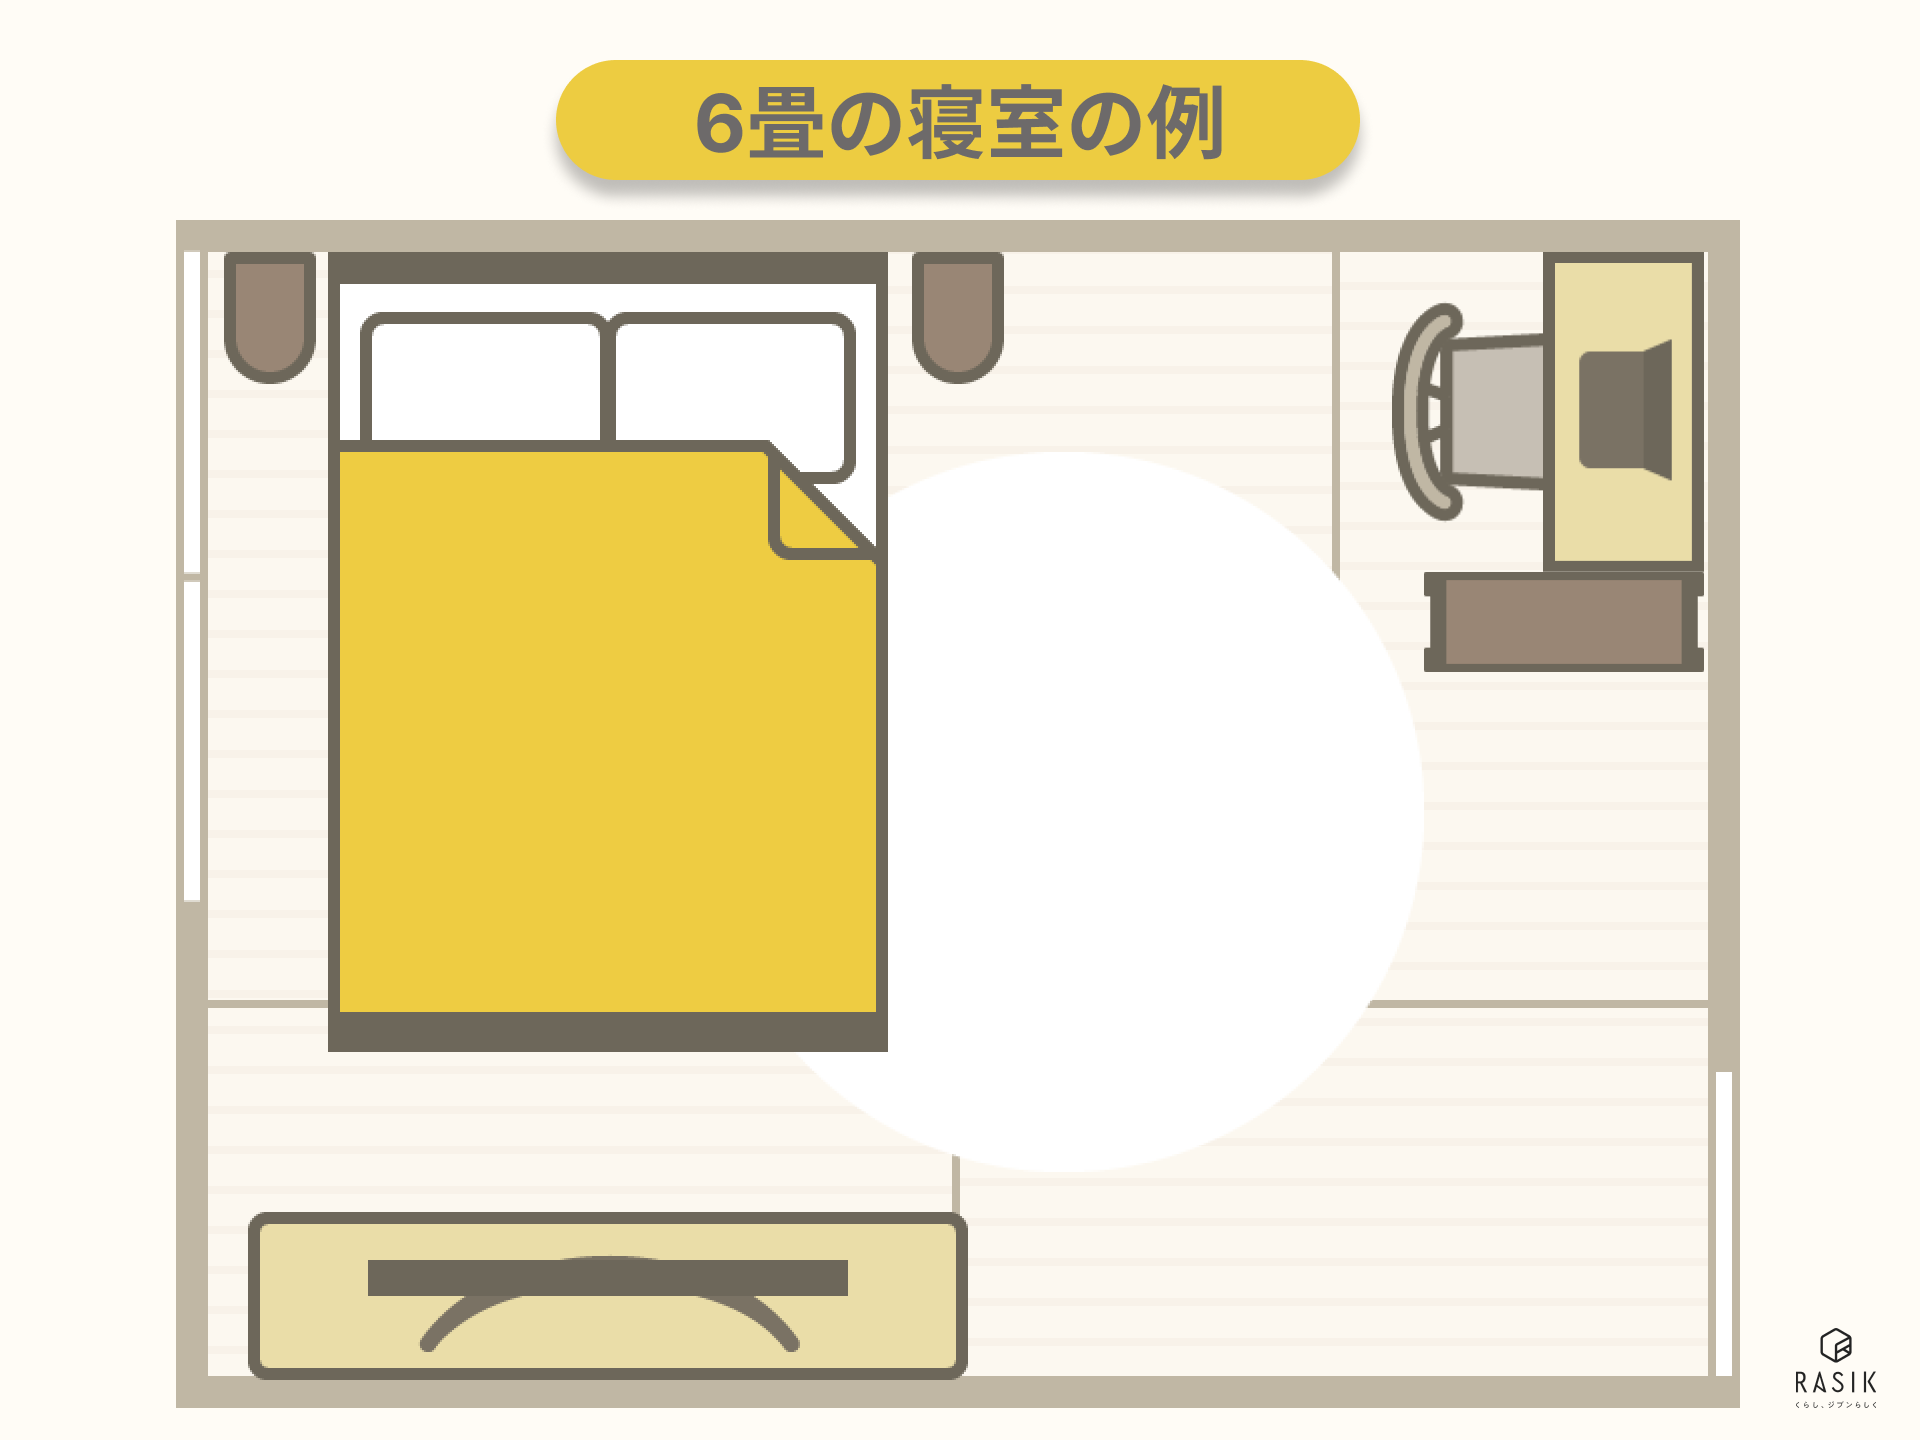 6畳の寝室の例